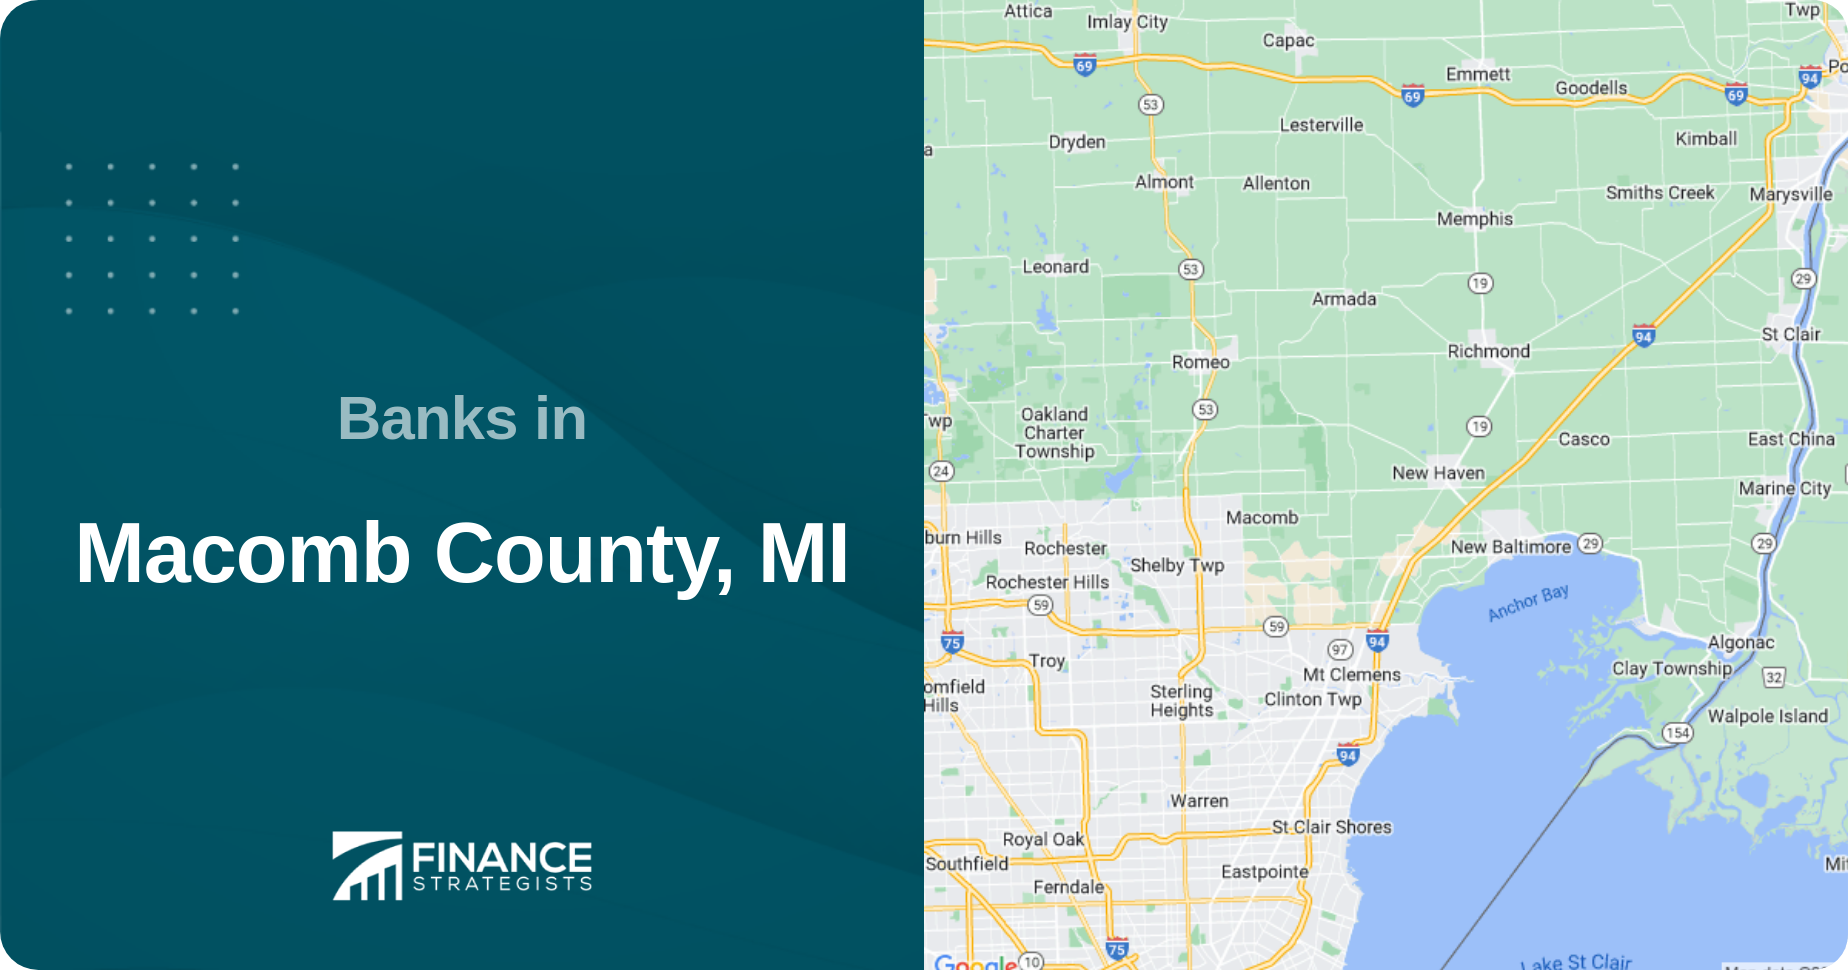 Banks in Macomb County, MI